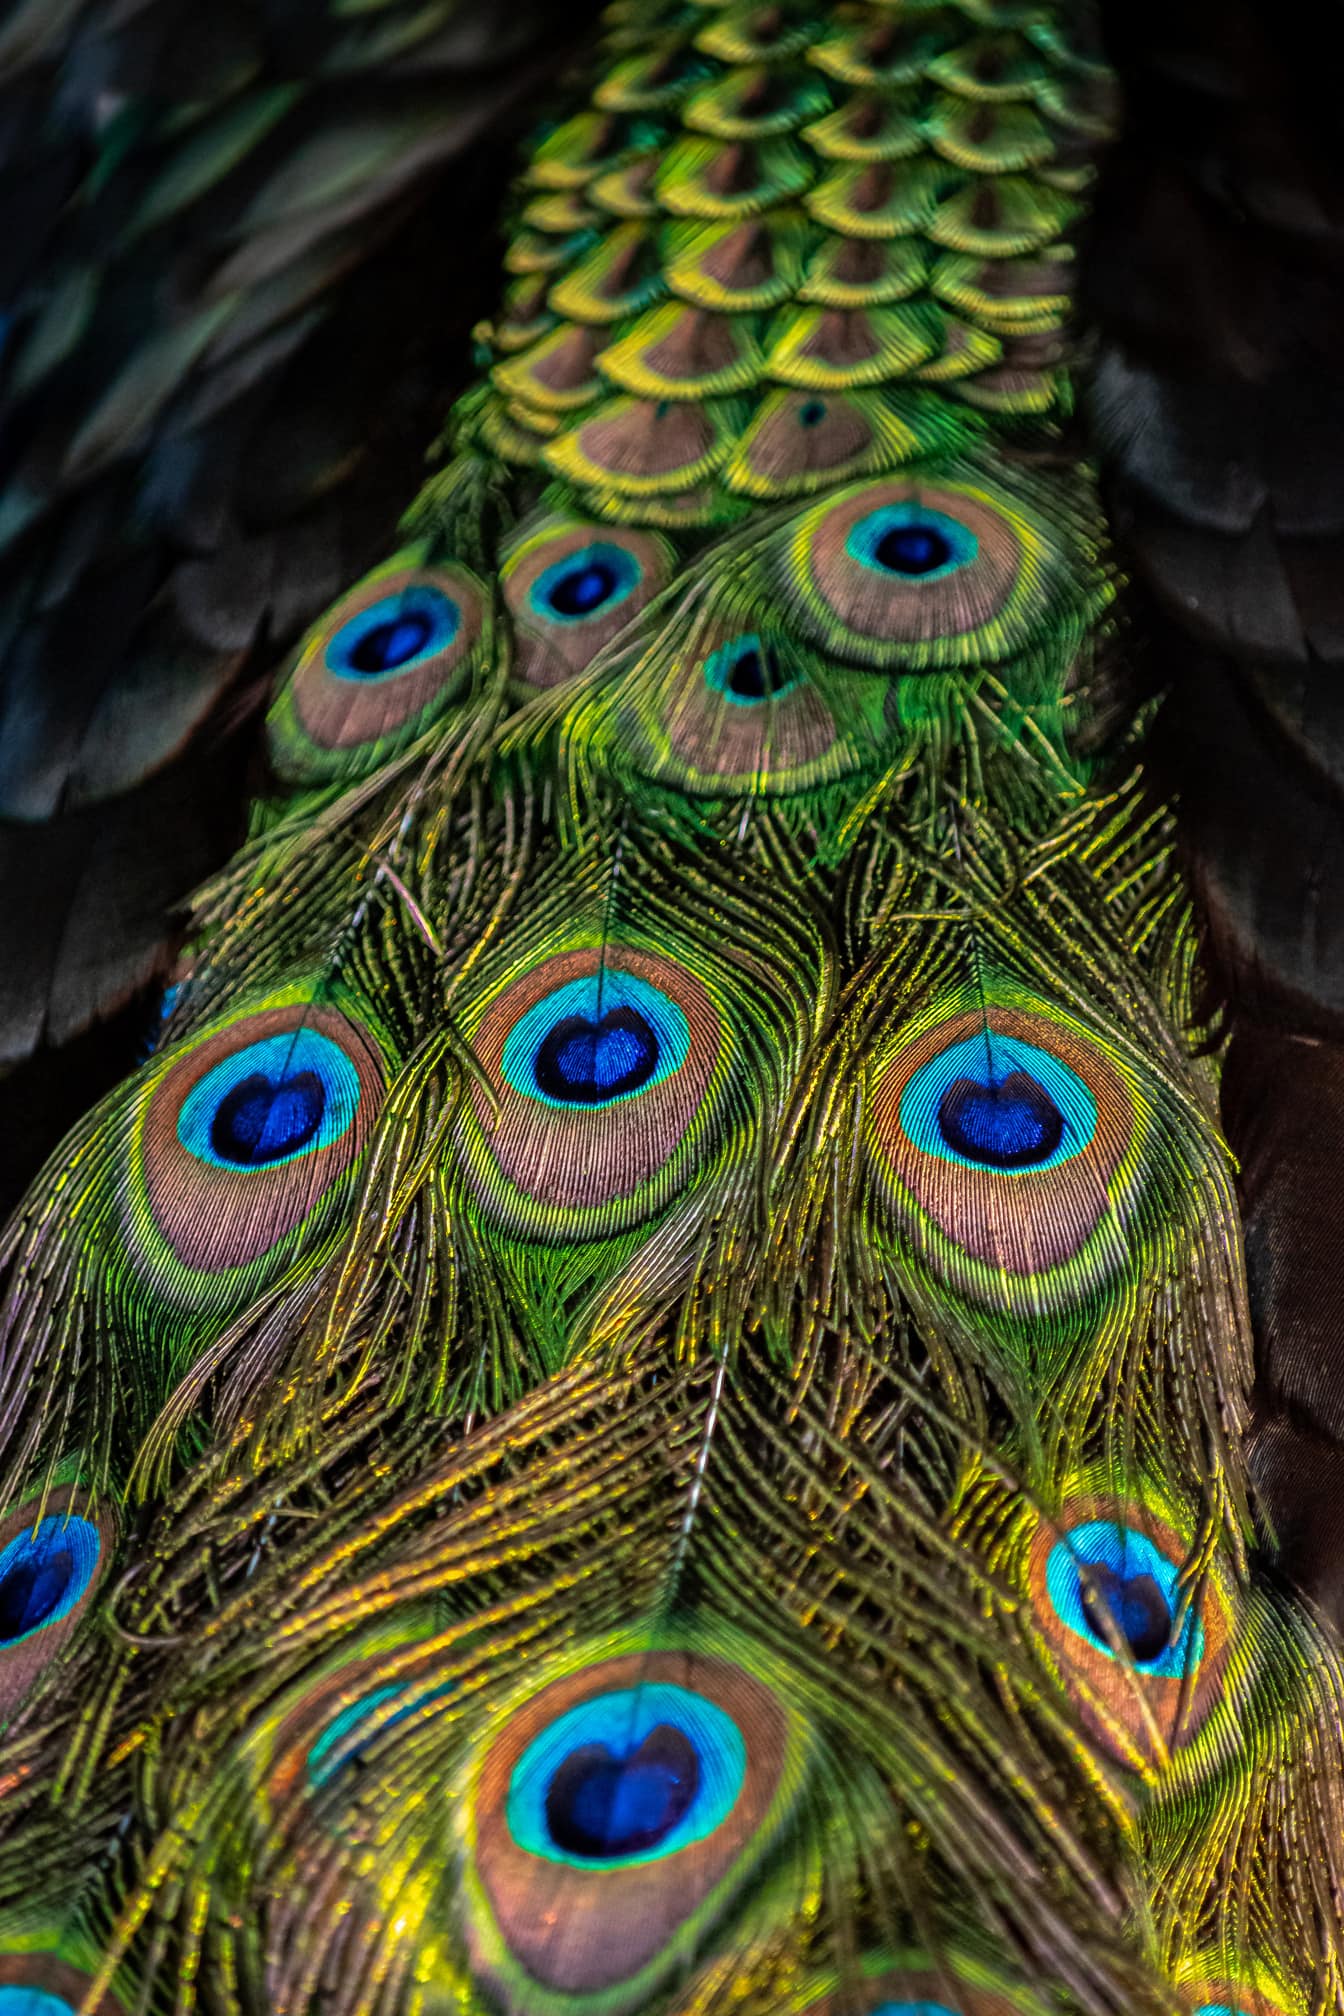 Renkli tavus kuşu kuyruğu tüylerinin görkemli renklendirmesi yakın çekim